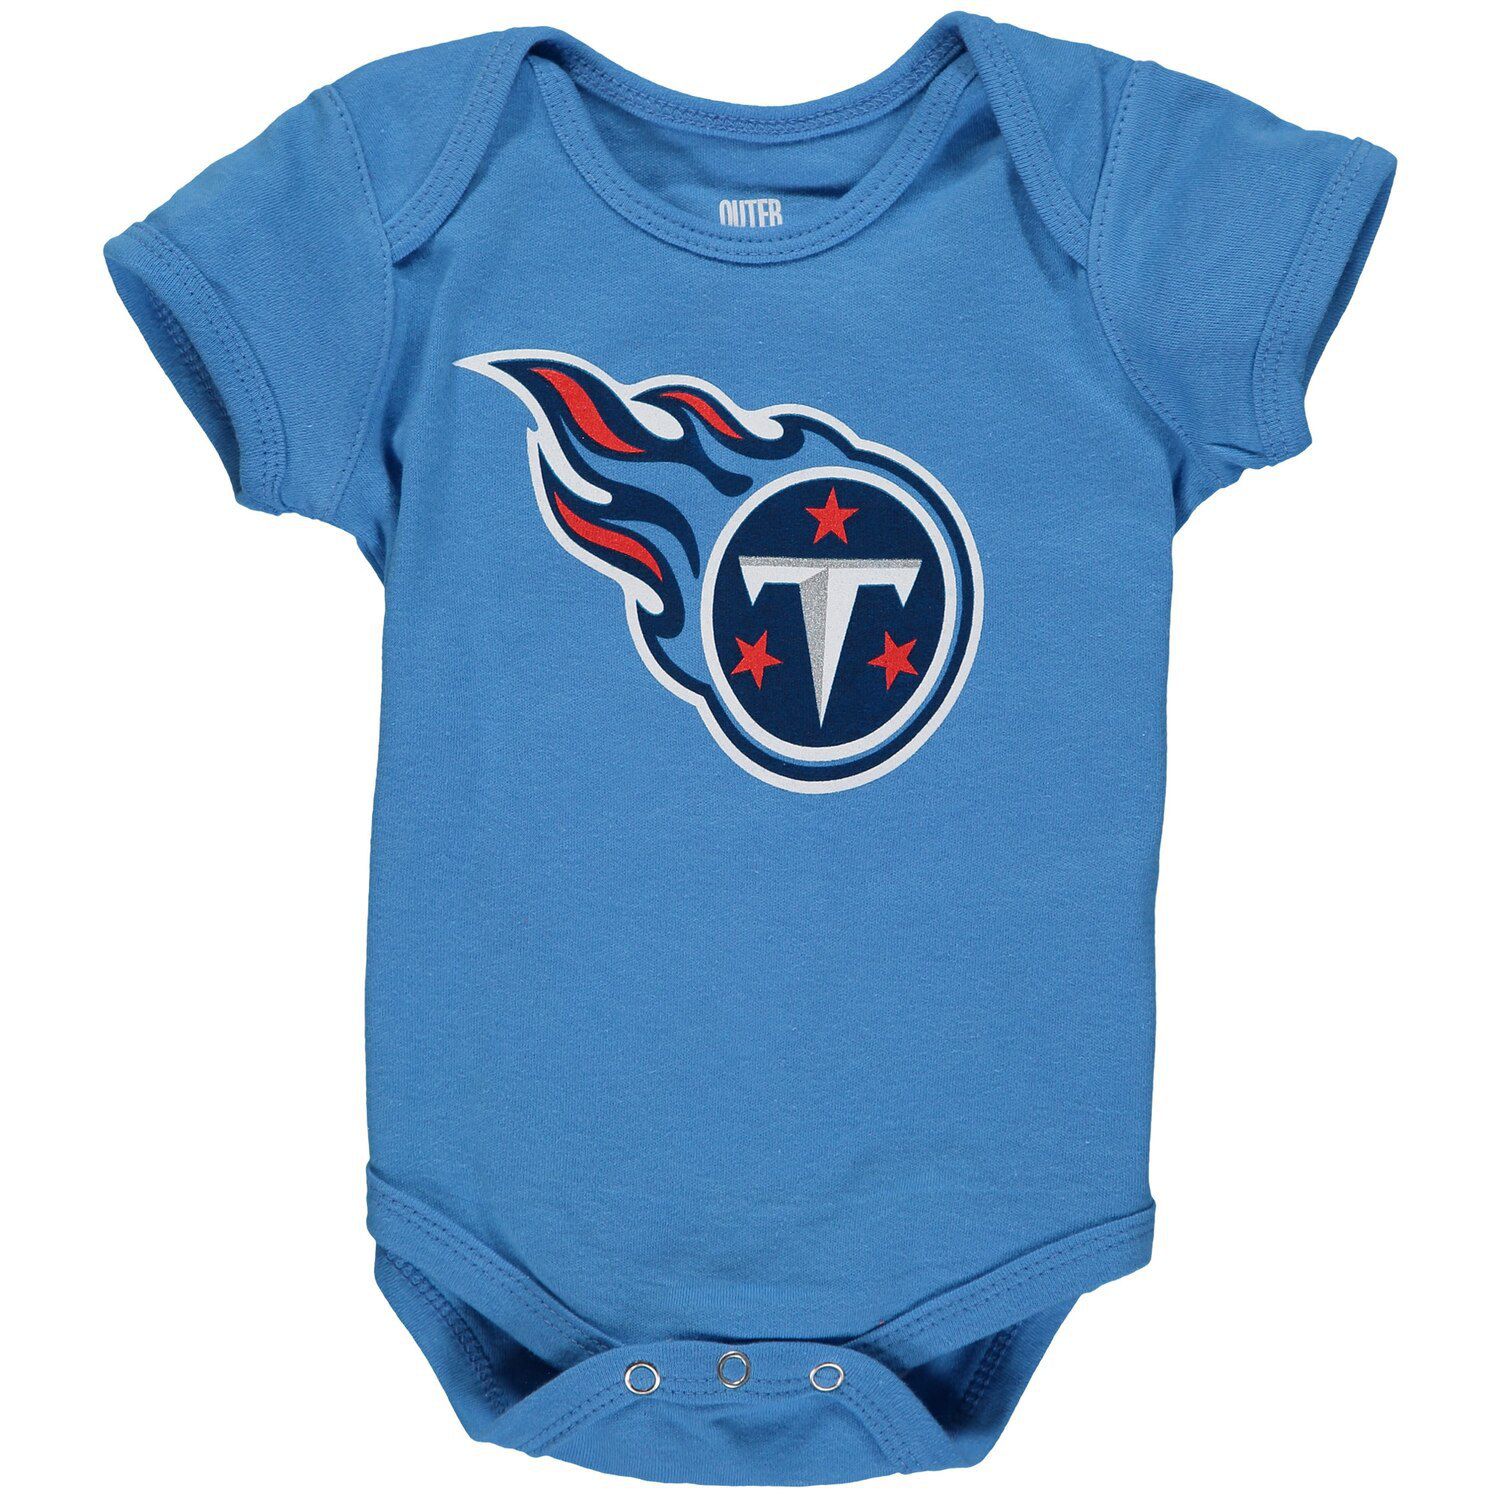 Голубое боди с логотипом команды Tennessee Titans для новорожденных Outerstuff